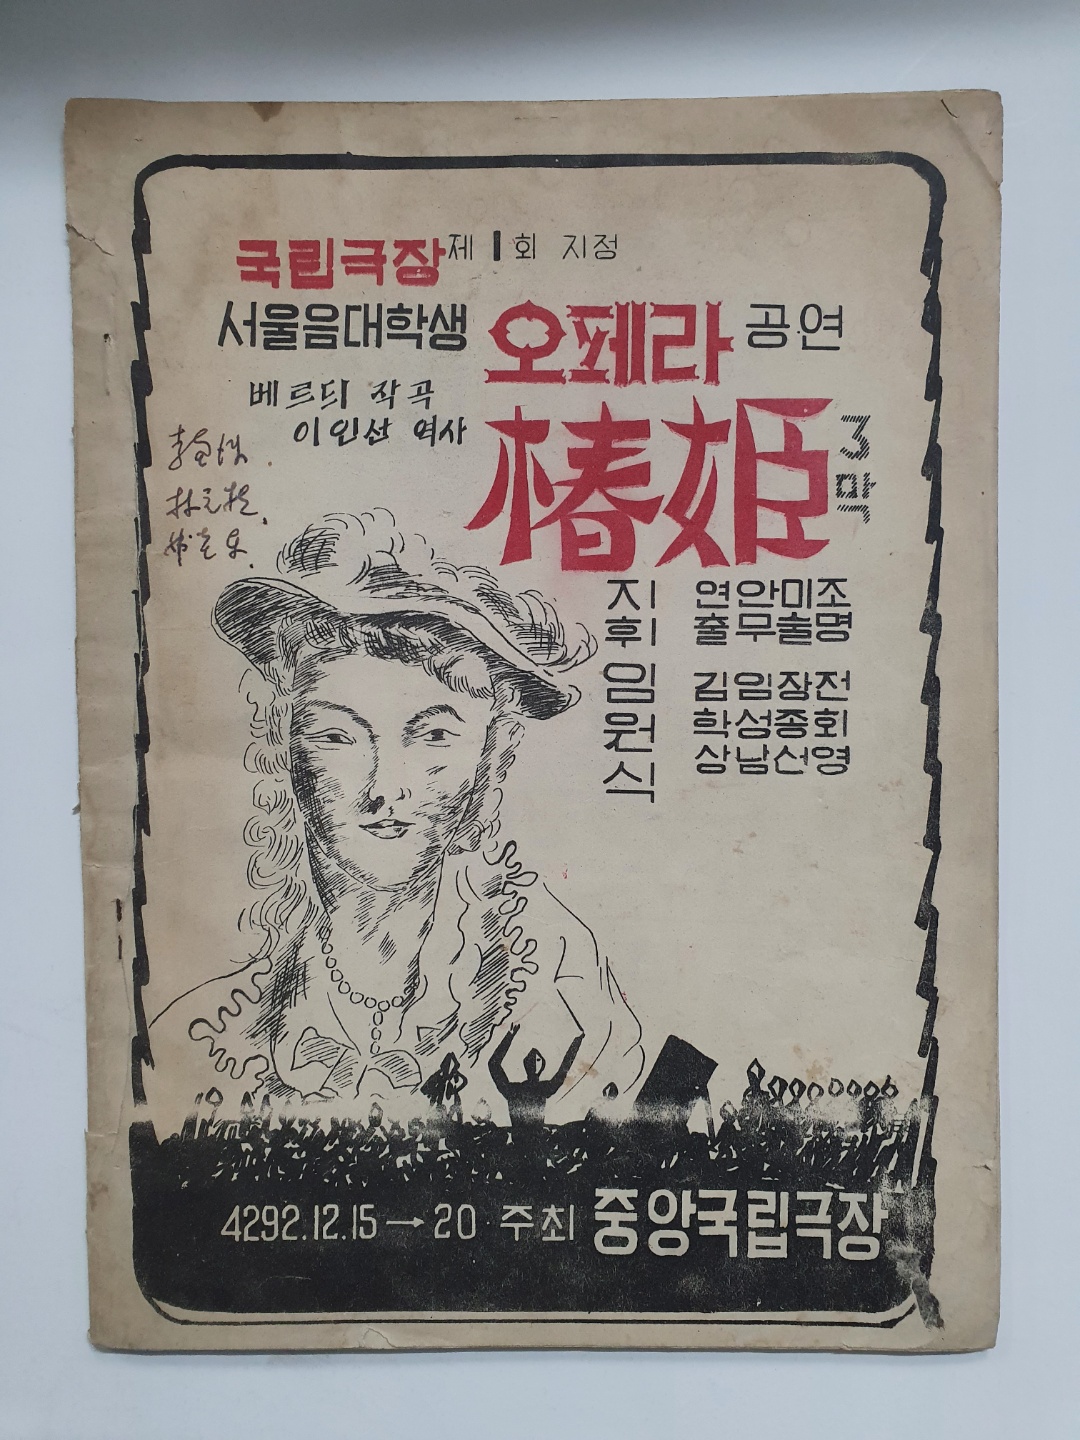 [국립극장 제1회 지정 서울음대학생 오페라 공연] 팸플릿, 1959